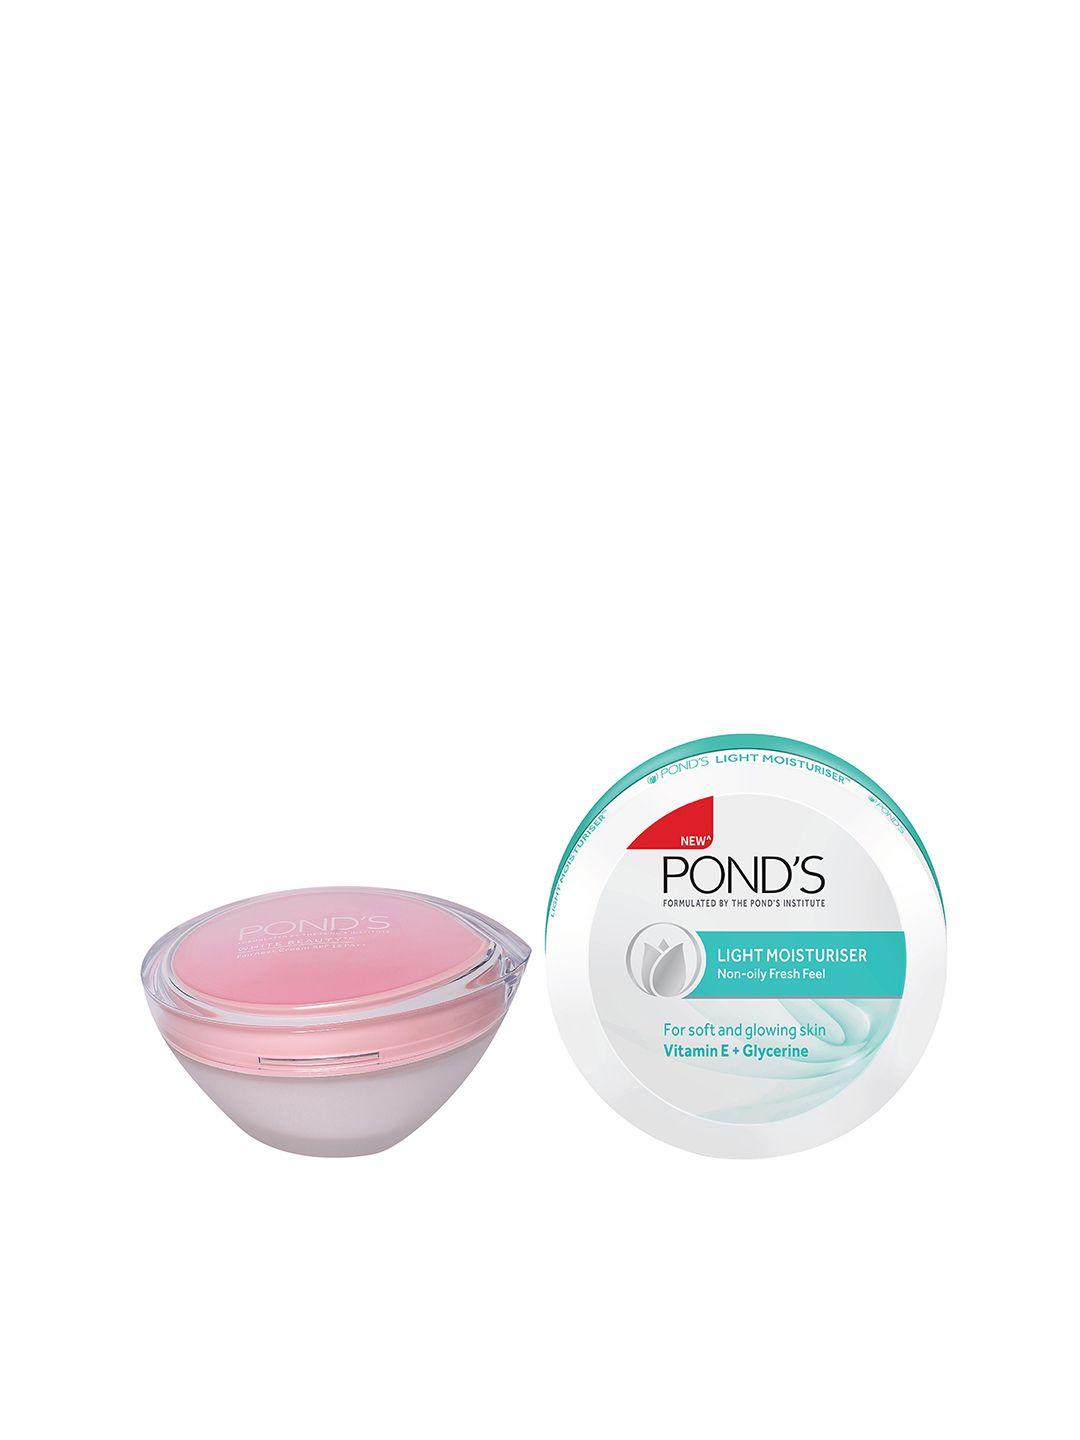 ponds set of white beauty spf 15 cream & non-oily fresh feel light moisturiser